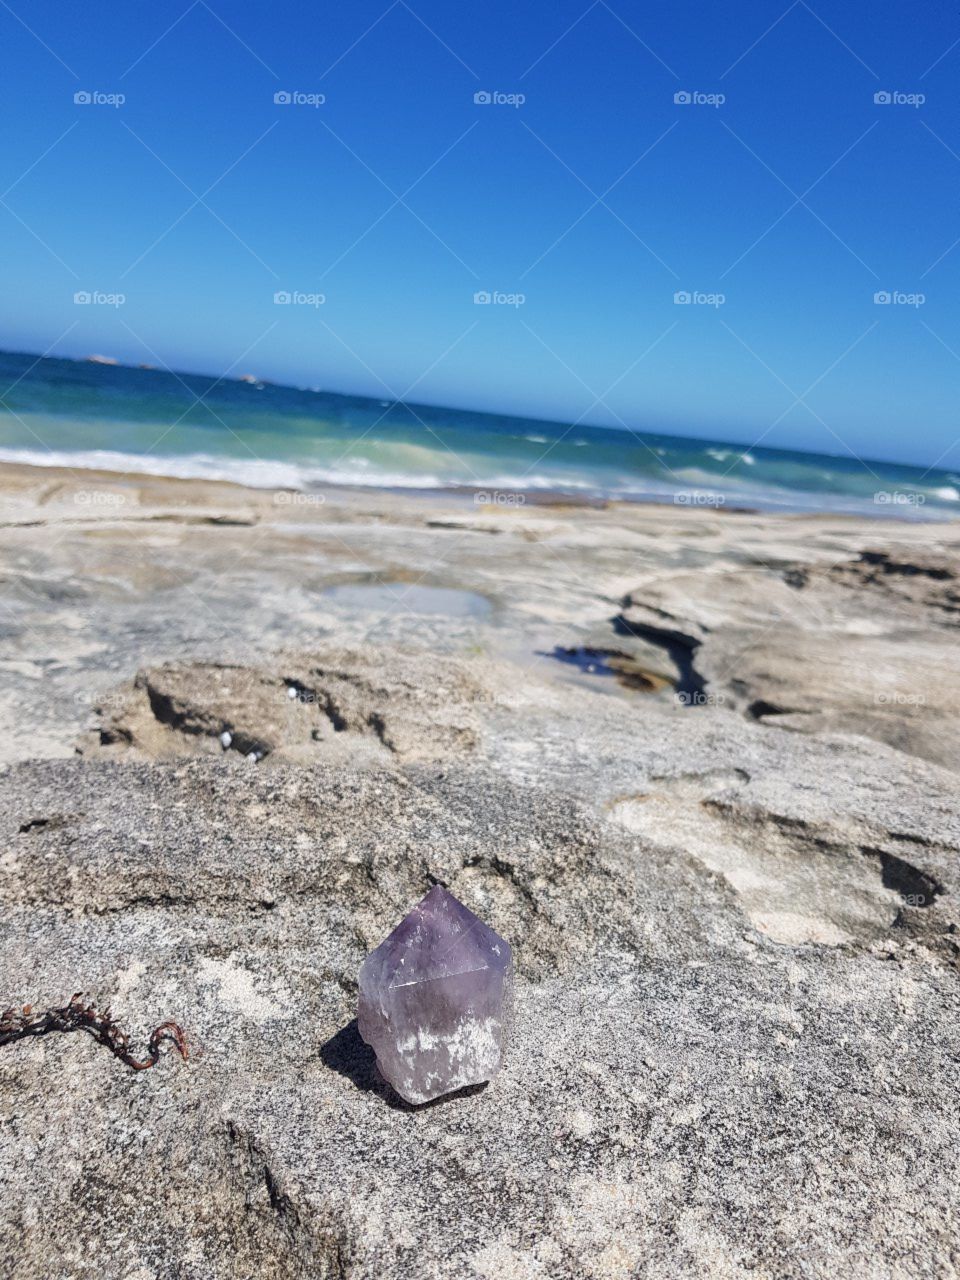 Crystal on rocky beach